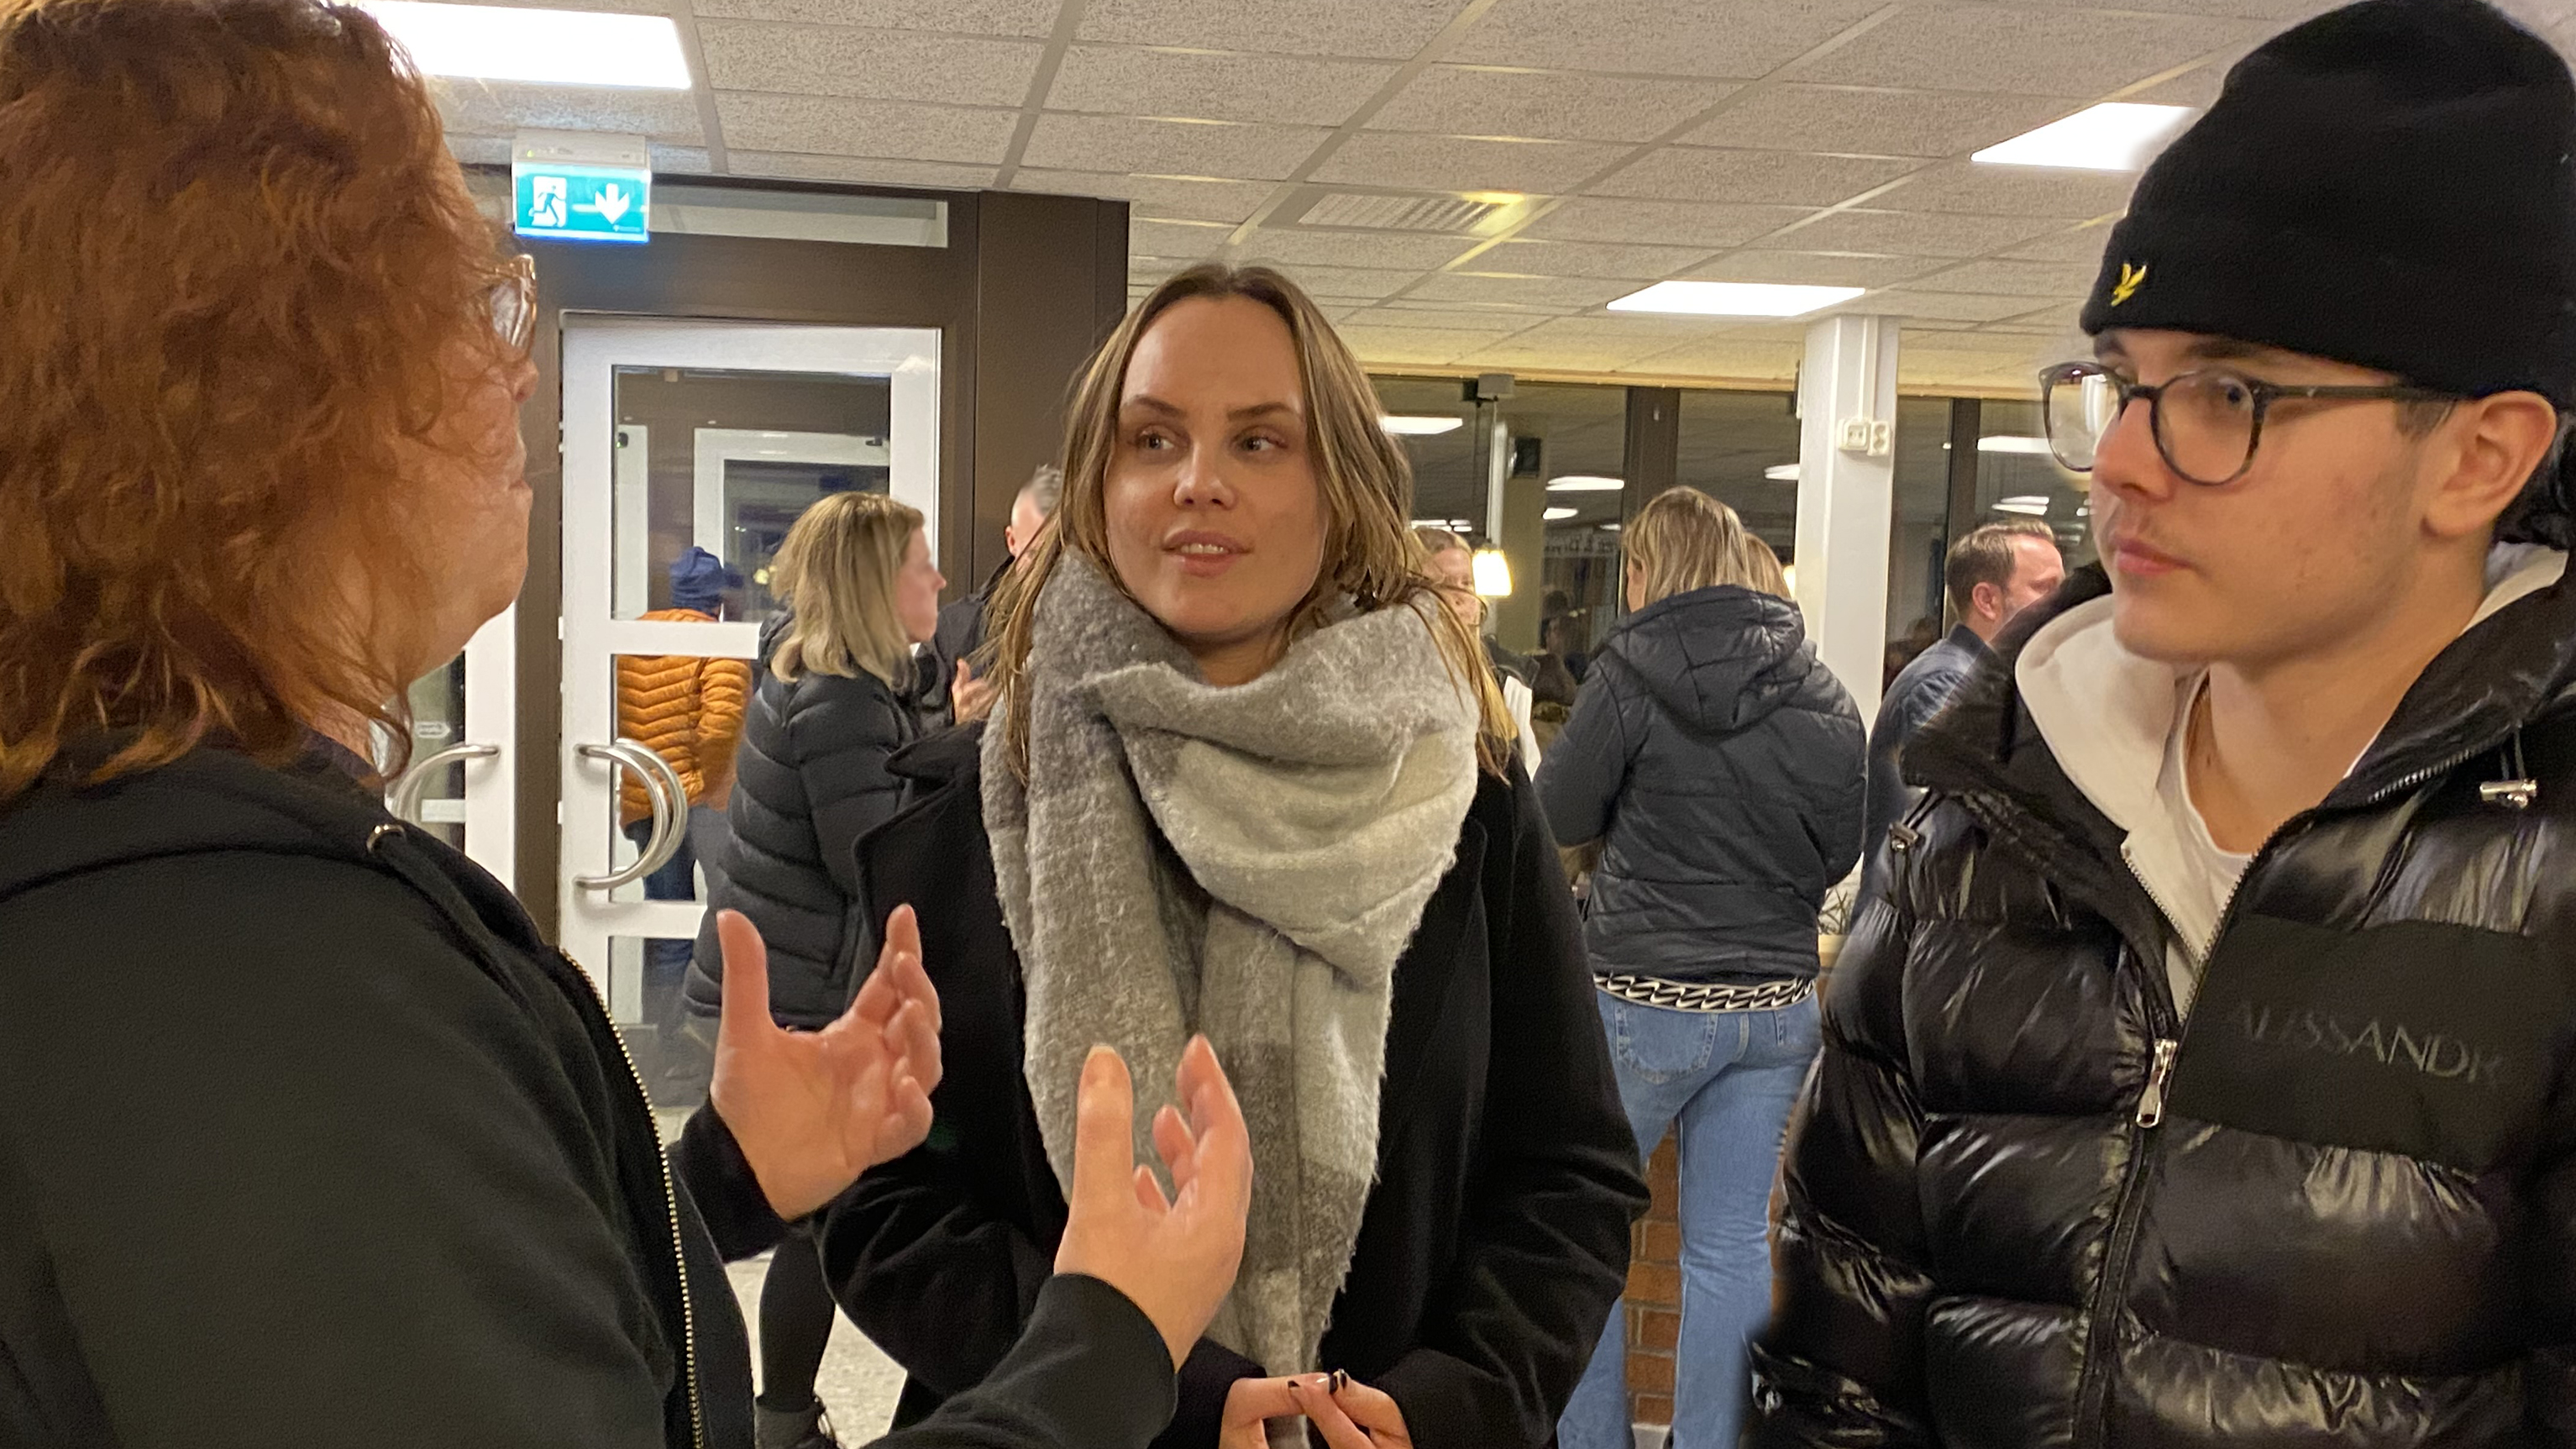 Syv Sandra Jansson Käck pratade med Oliver Iberdemaj Holmberg som besökte öppet hus tillsammans med mamma Laura. 